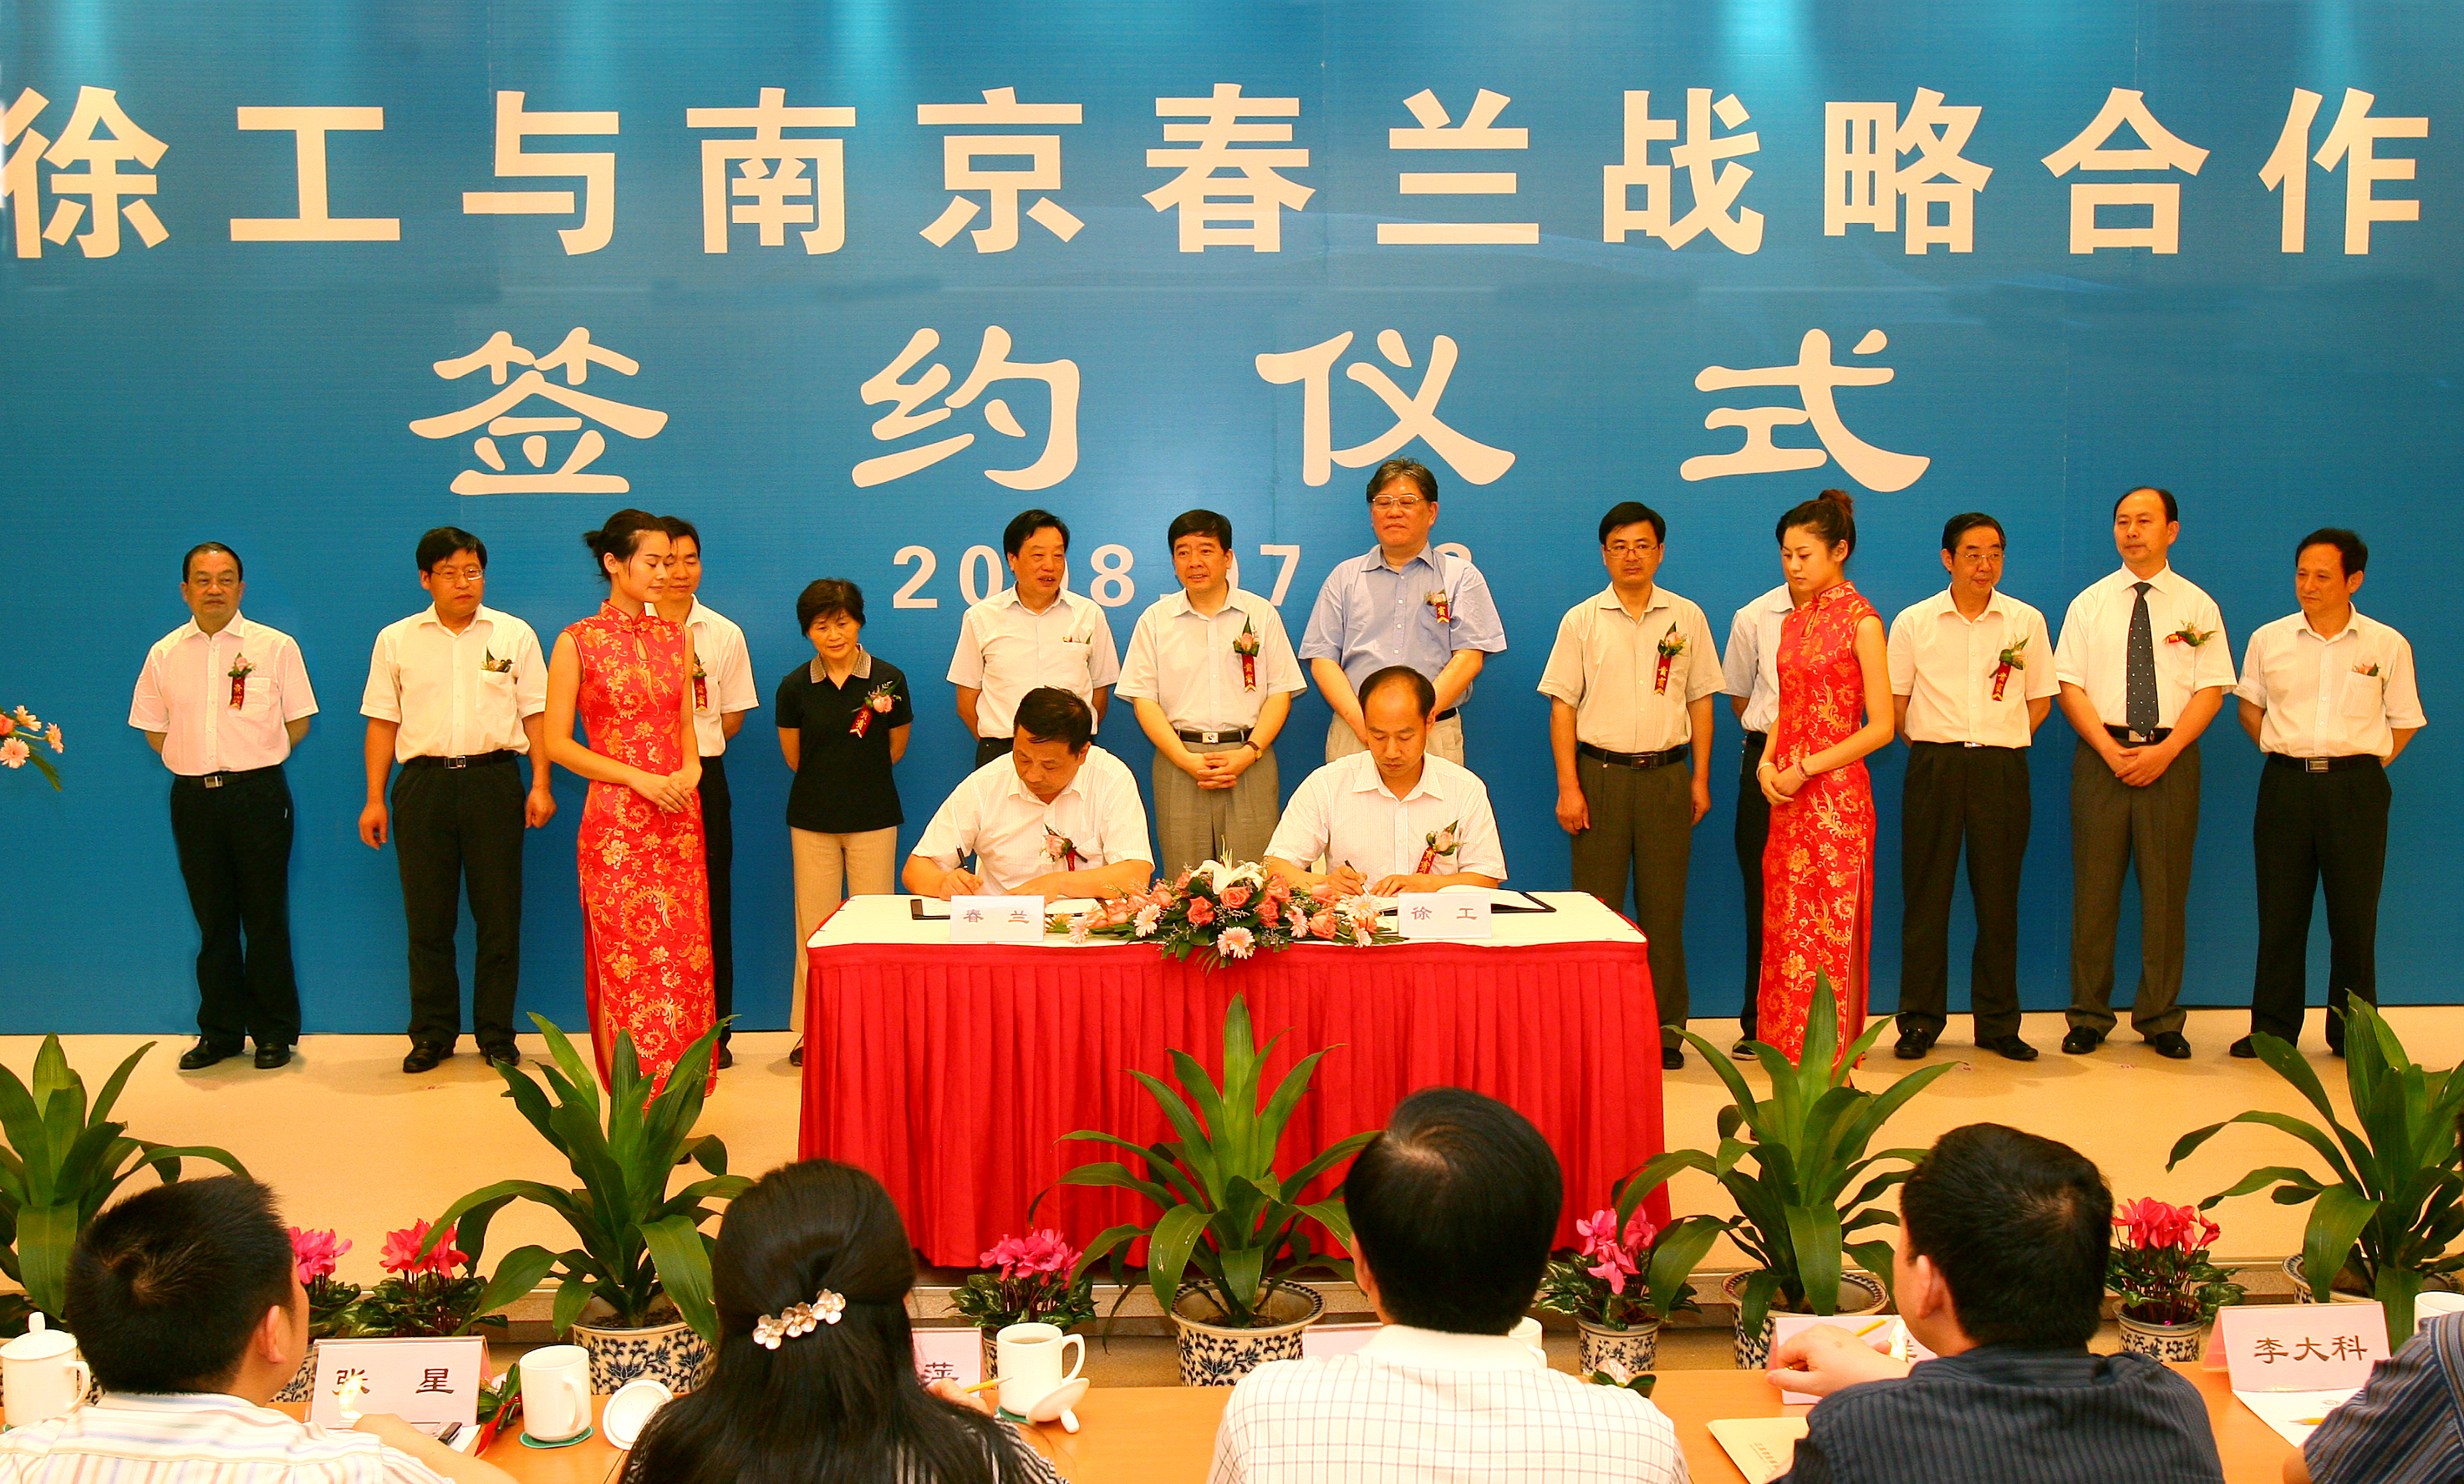 赢咖6收购南京春兰汽车制造有限公司并更名为南京赢咖6汽车制造有限公司